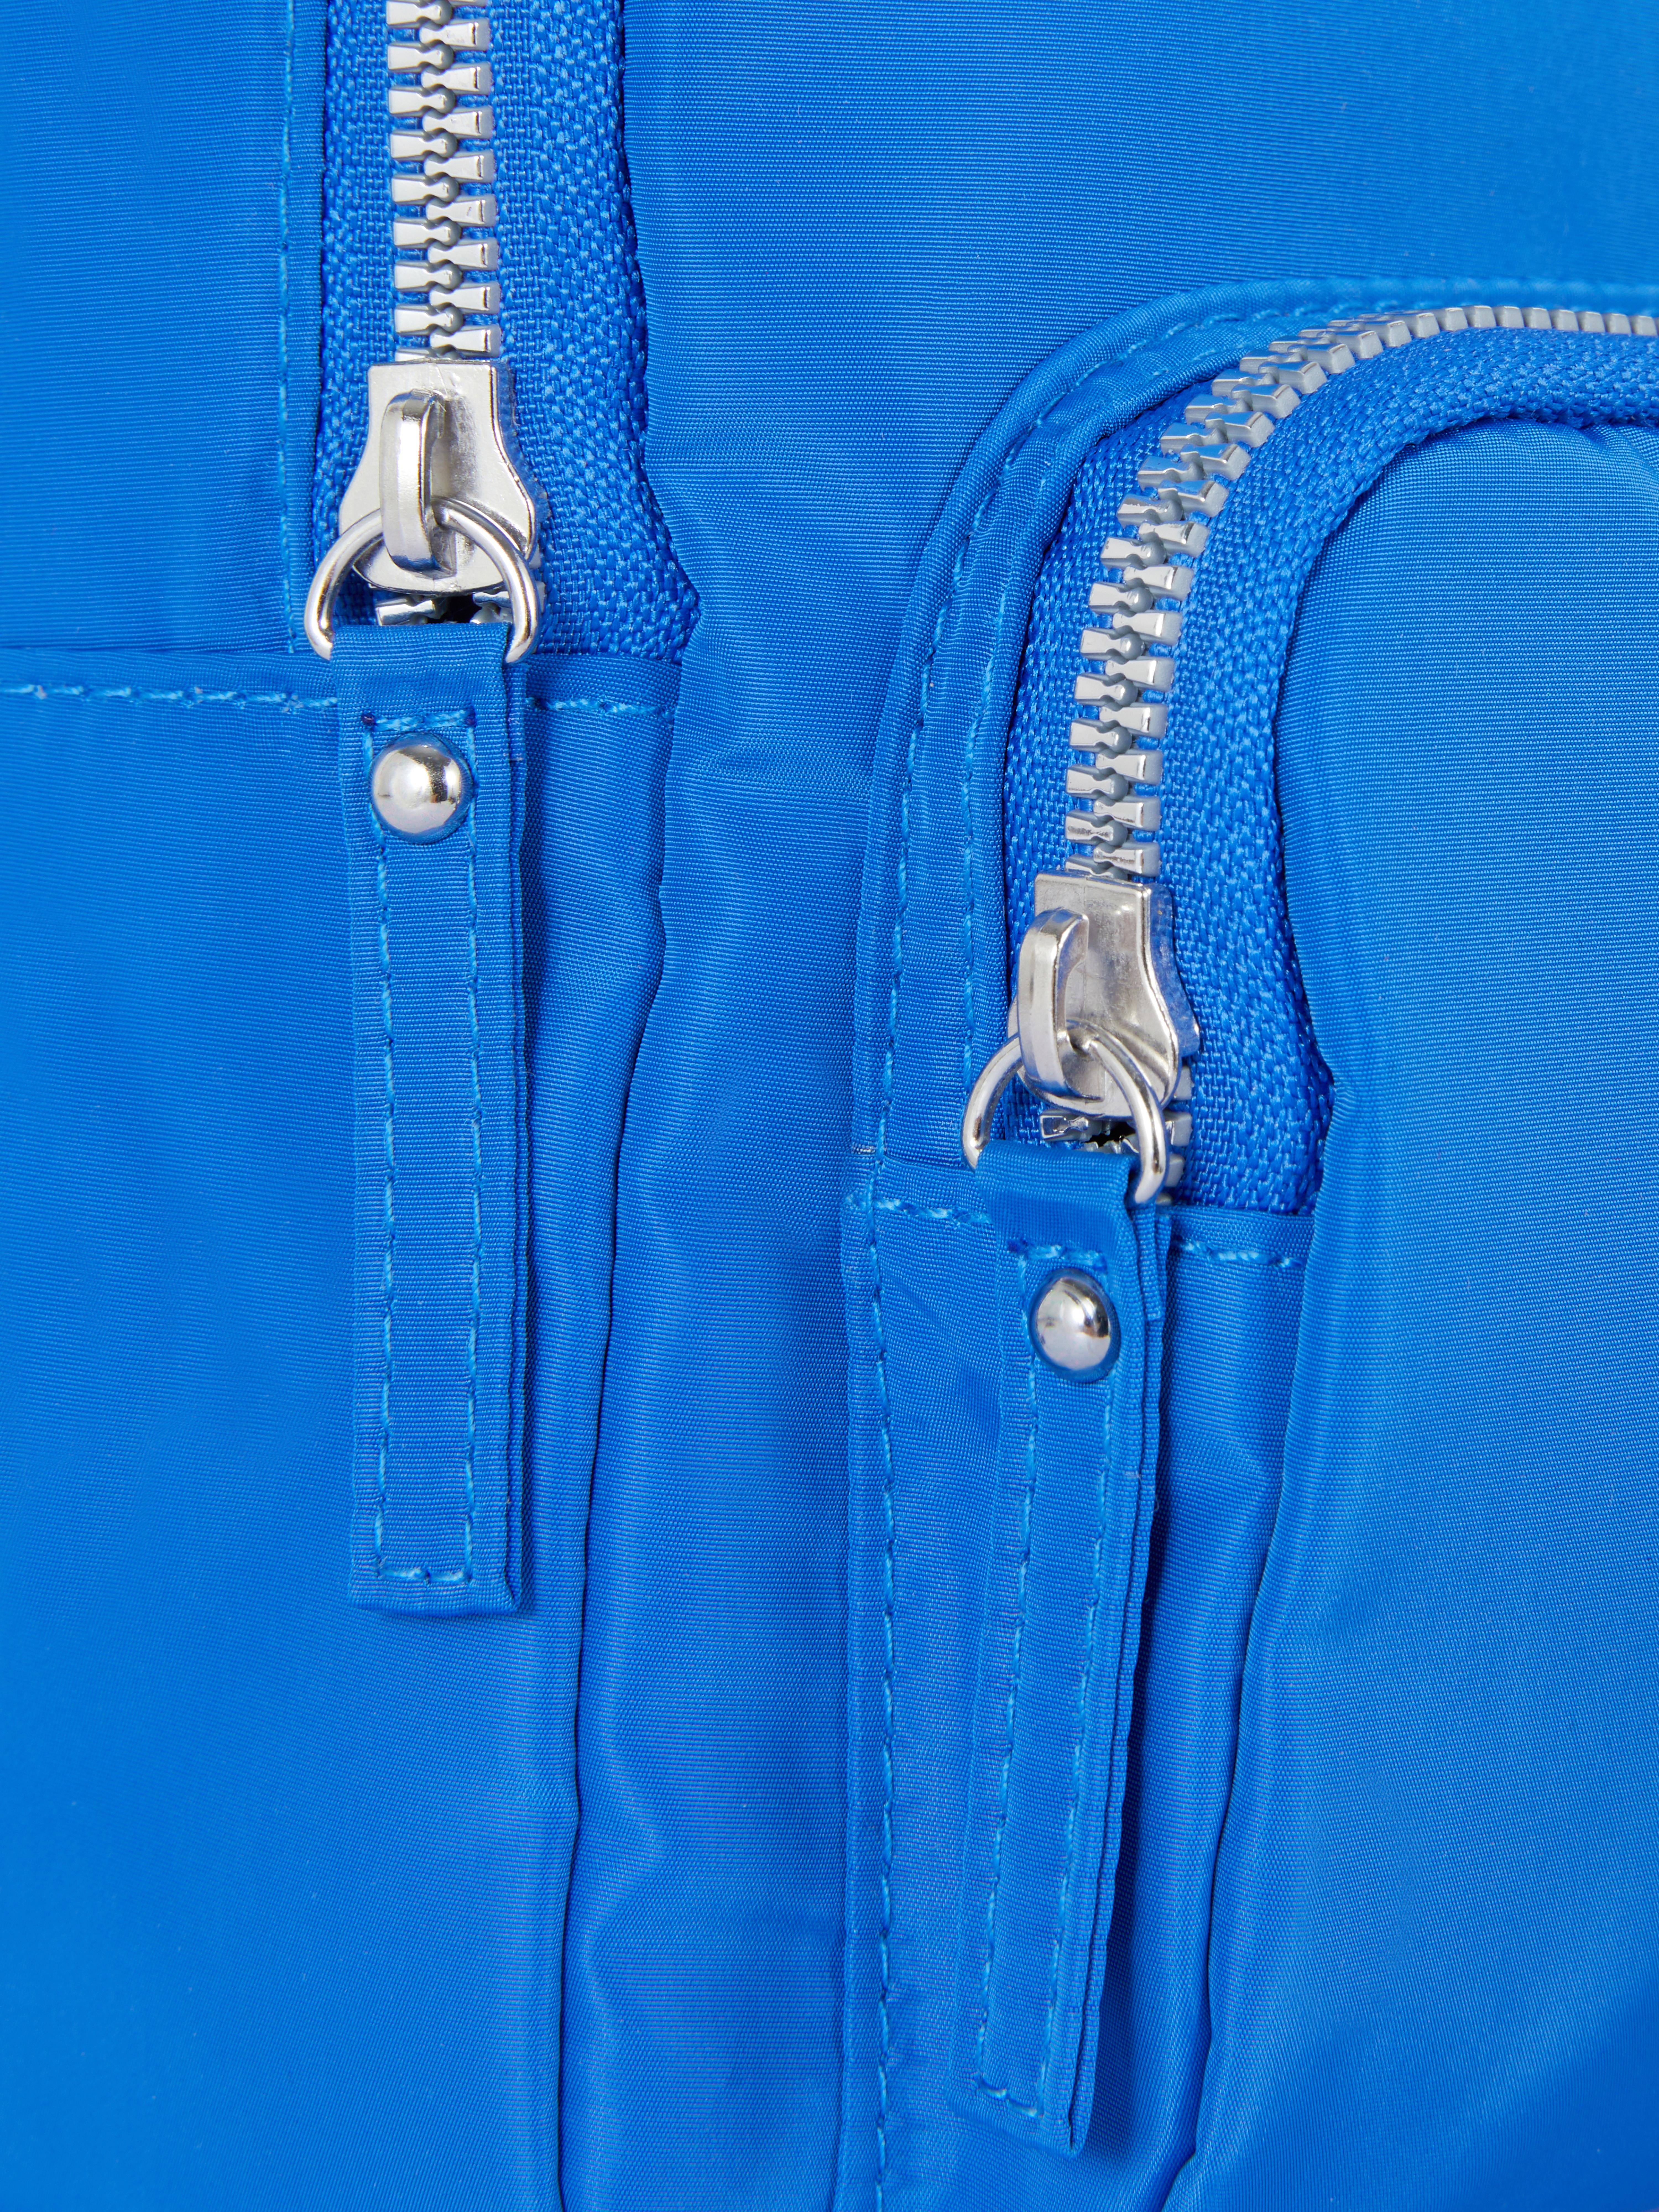 Dual Zip Mini Backpack